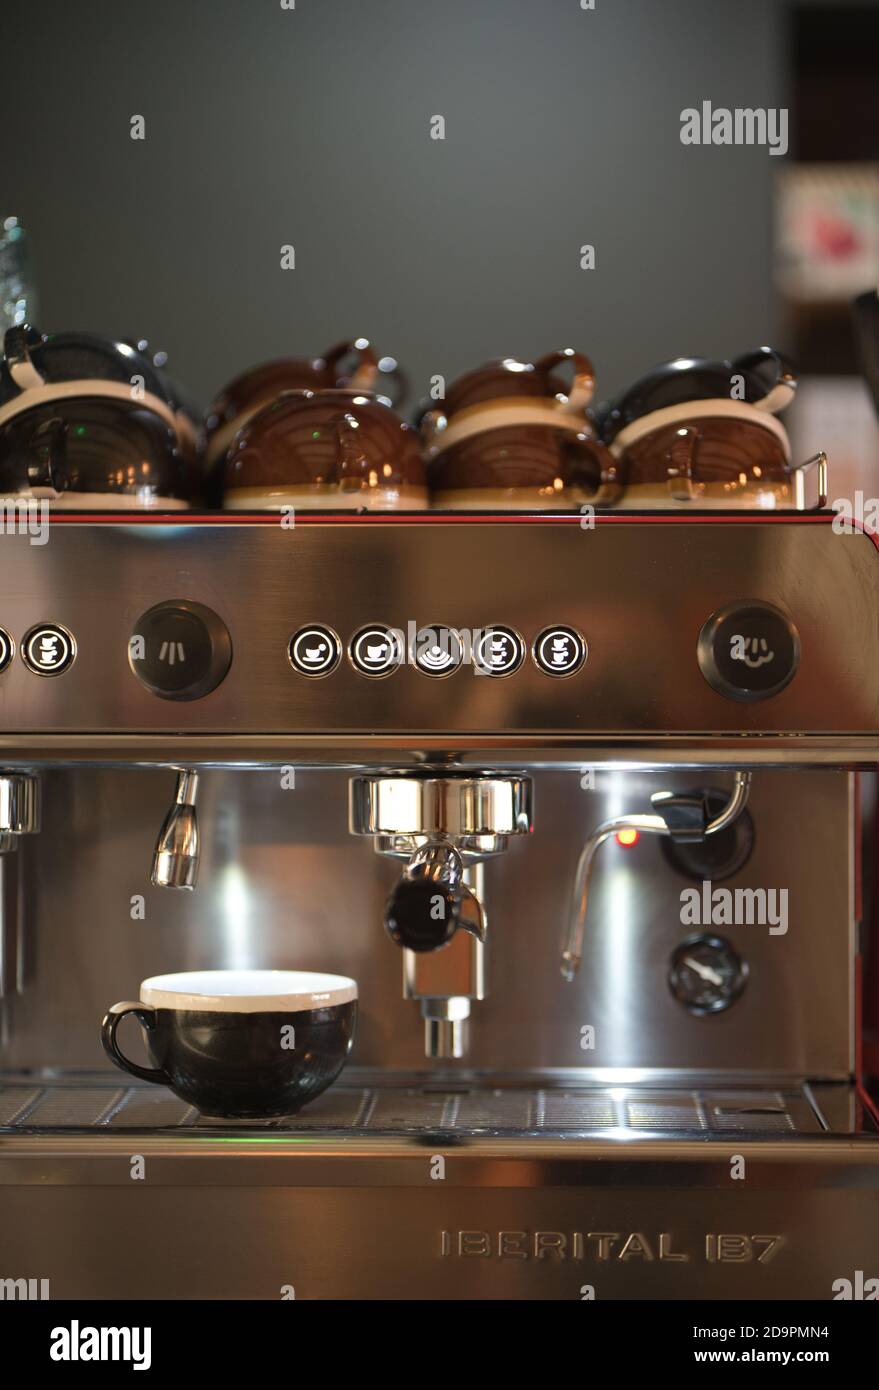 Italienische Kaffeemaschine im Coffee Shop - Becher oben - Espressomaschine Stockfoto